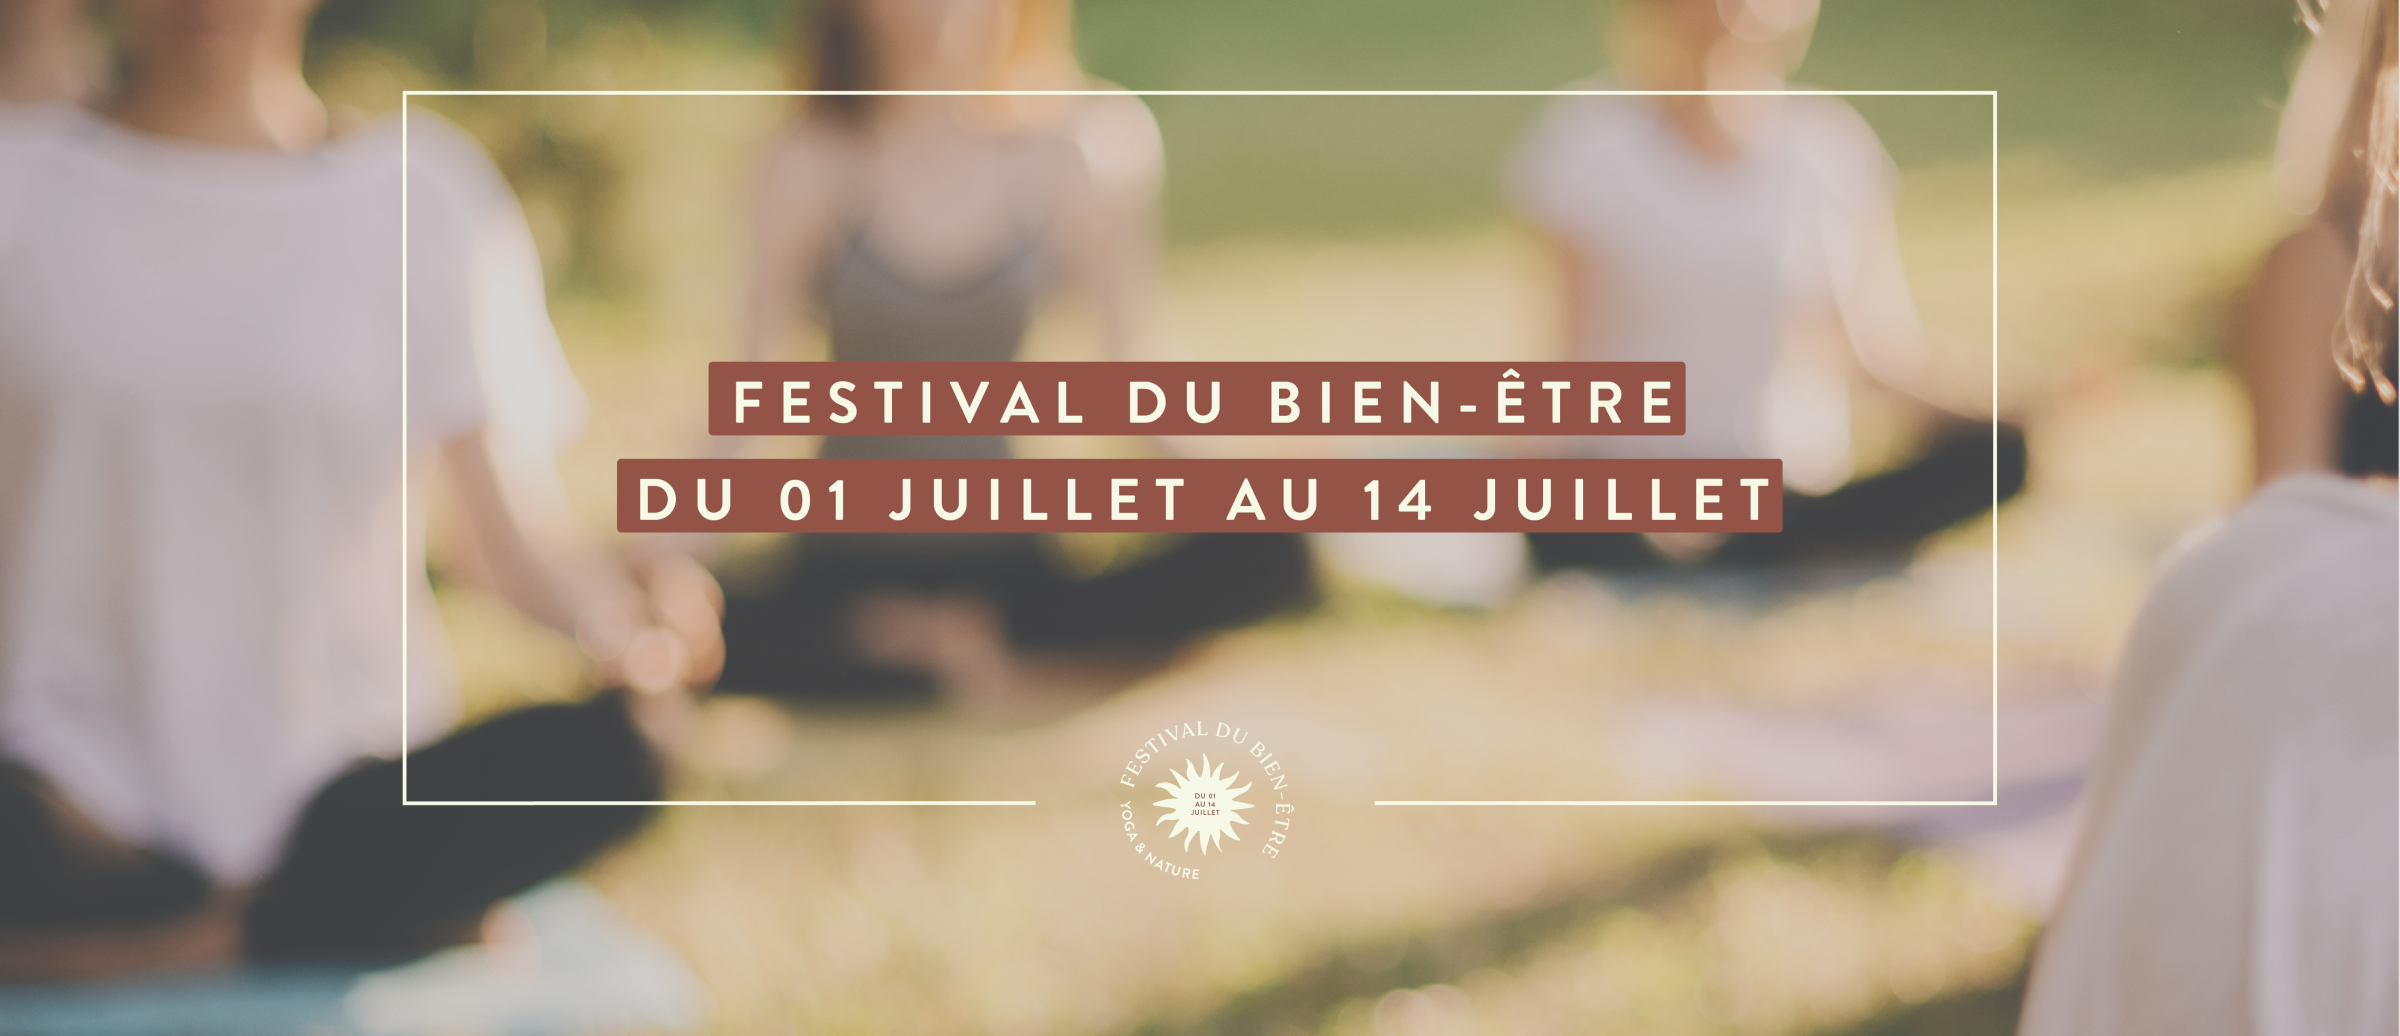 <center>Festival du bien-être :<br />Yoga & Nature au Domaine de Verdagne</center>